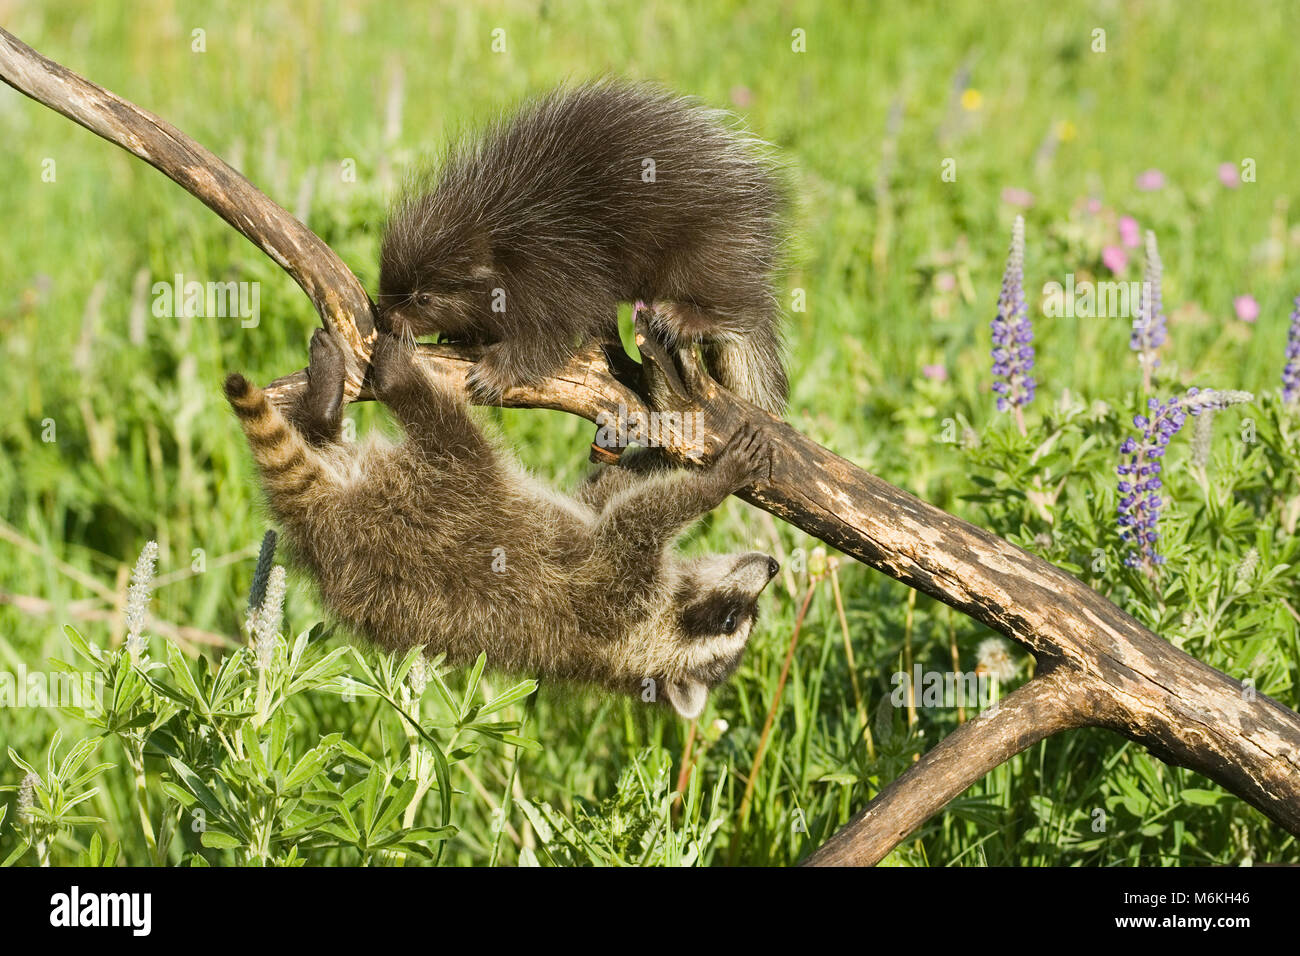 Junge gemeinsame Porcupine treffen junge waschbären auf einem Baumstamm in der Wiese. Stockfoto